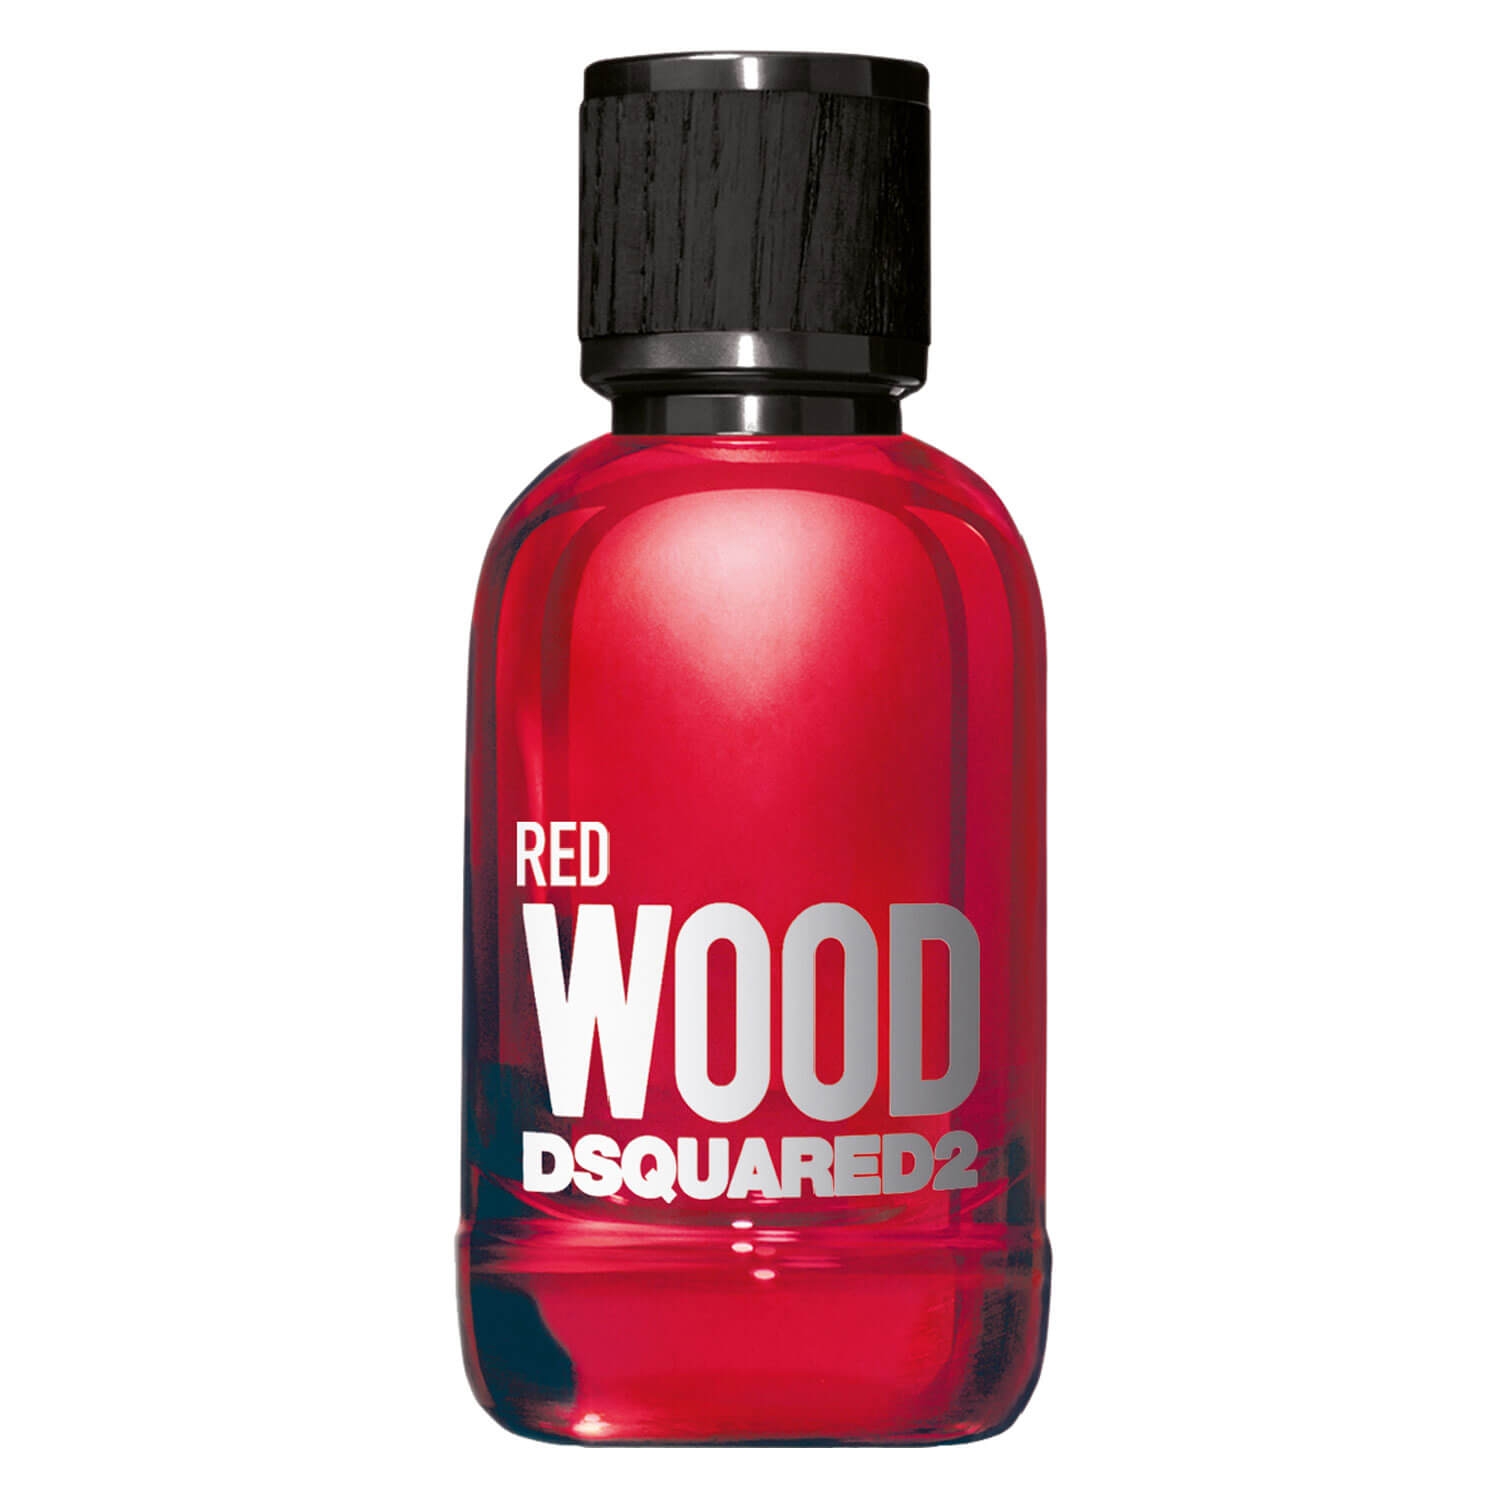 Produktbild von DSQUARED2 WOOD - Red Pour Femme Eau de Toilette